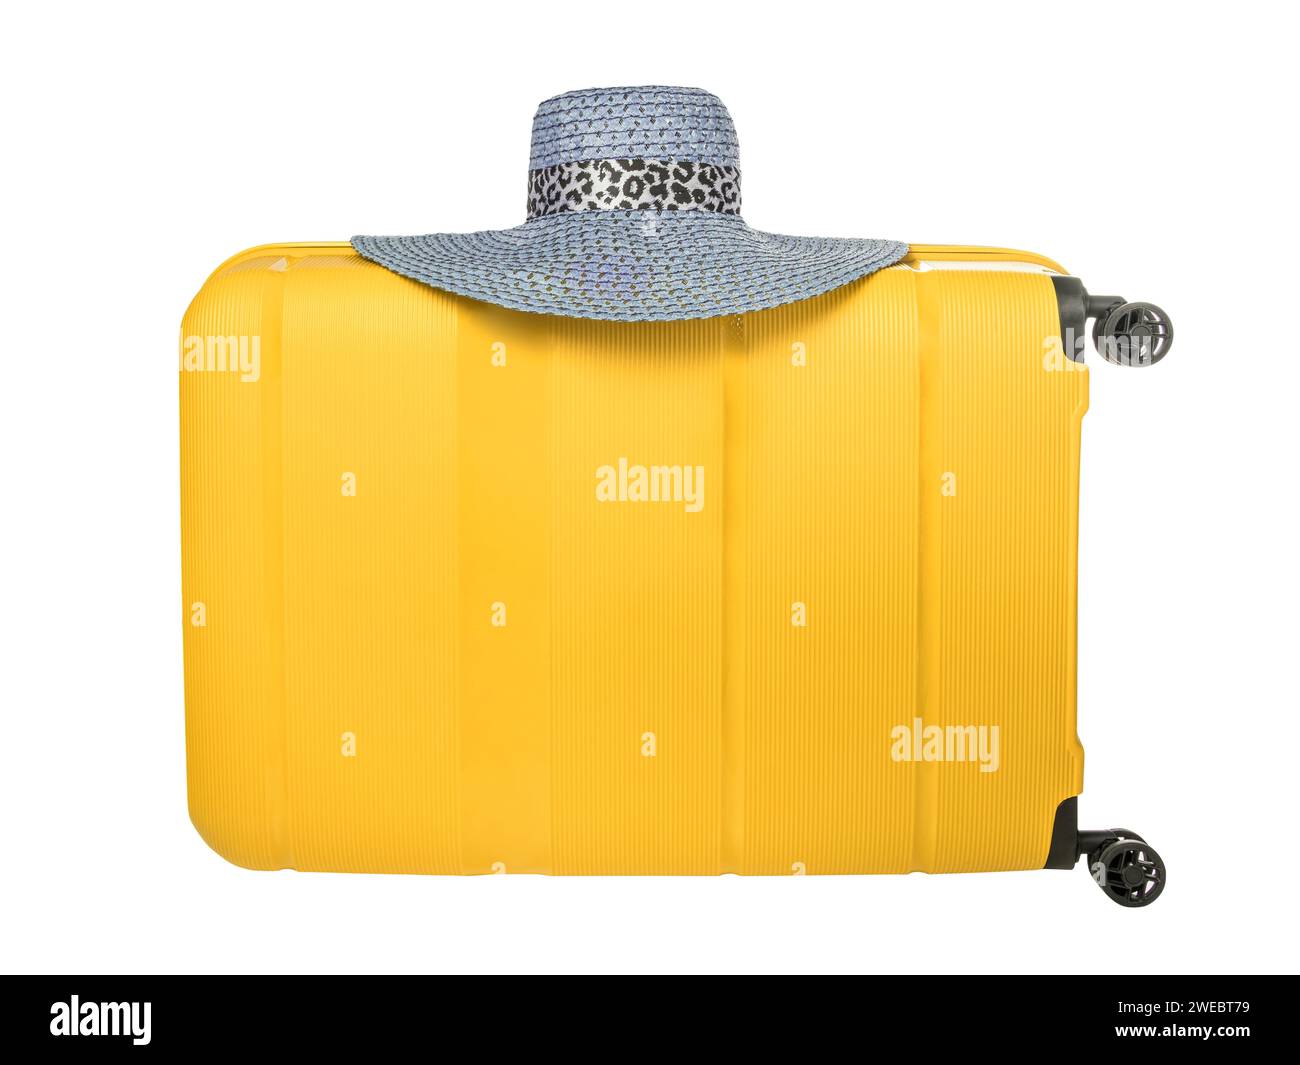 Valise jaune de voyage avec chapeau bleu isolé sur fond blanc. Valise de voyage en plastique avec chapeau suspendu. Concept de vacances de voyage avec espace pour yo Banque D'Images